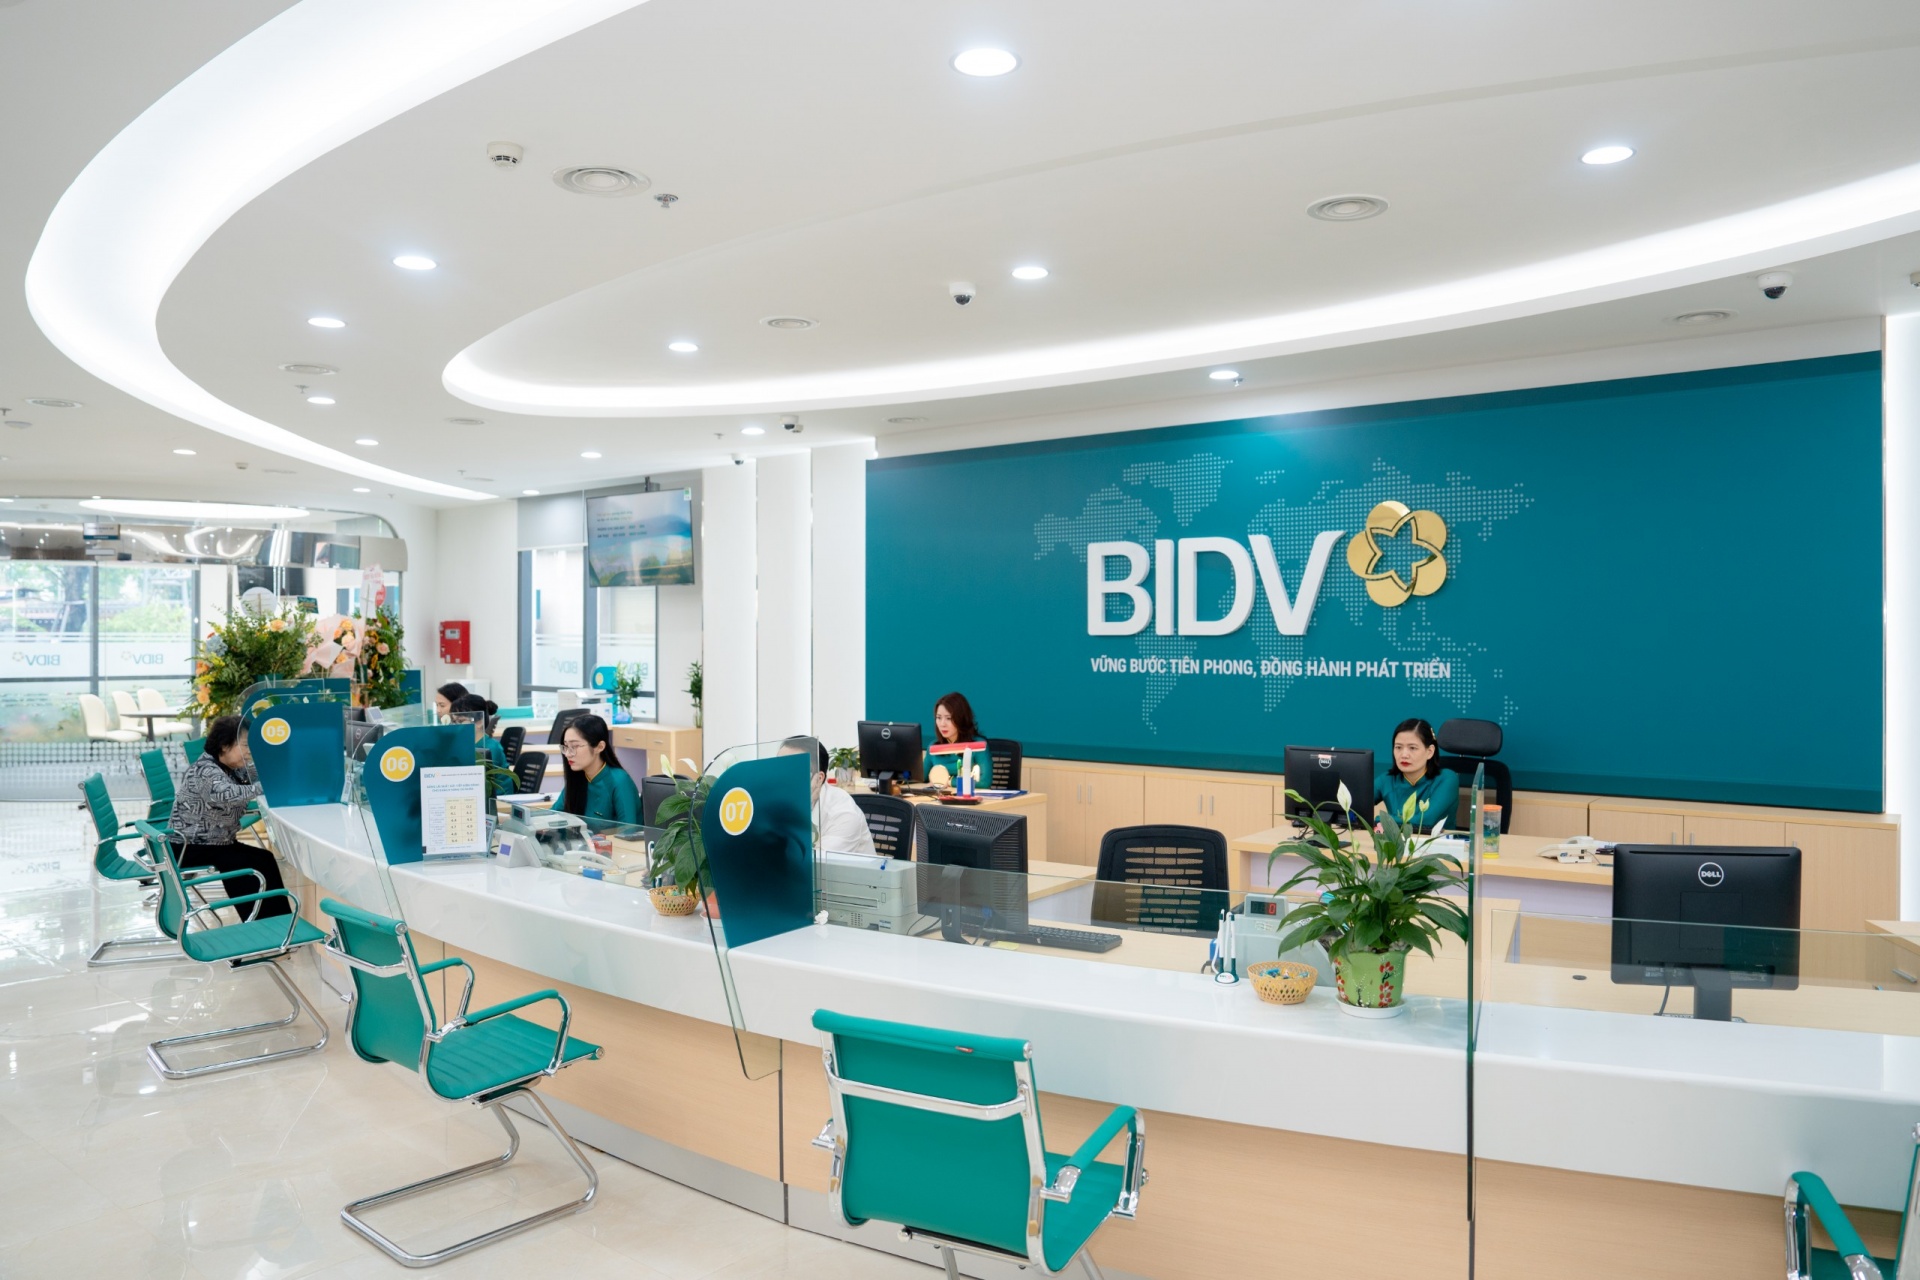 BIDV đã được vinh danh với các giải thưởng danh giá như Ngân hàng SME tốt nhất Đông Nam Á 2022, Ngân hàng SME tốt nhất Việt Nam 5 năm liên tiếp từ 2018-2022…